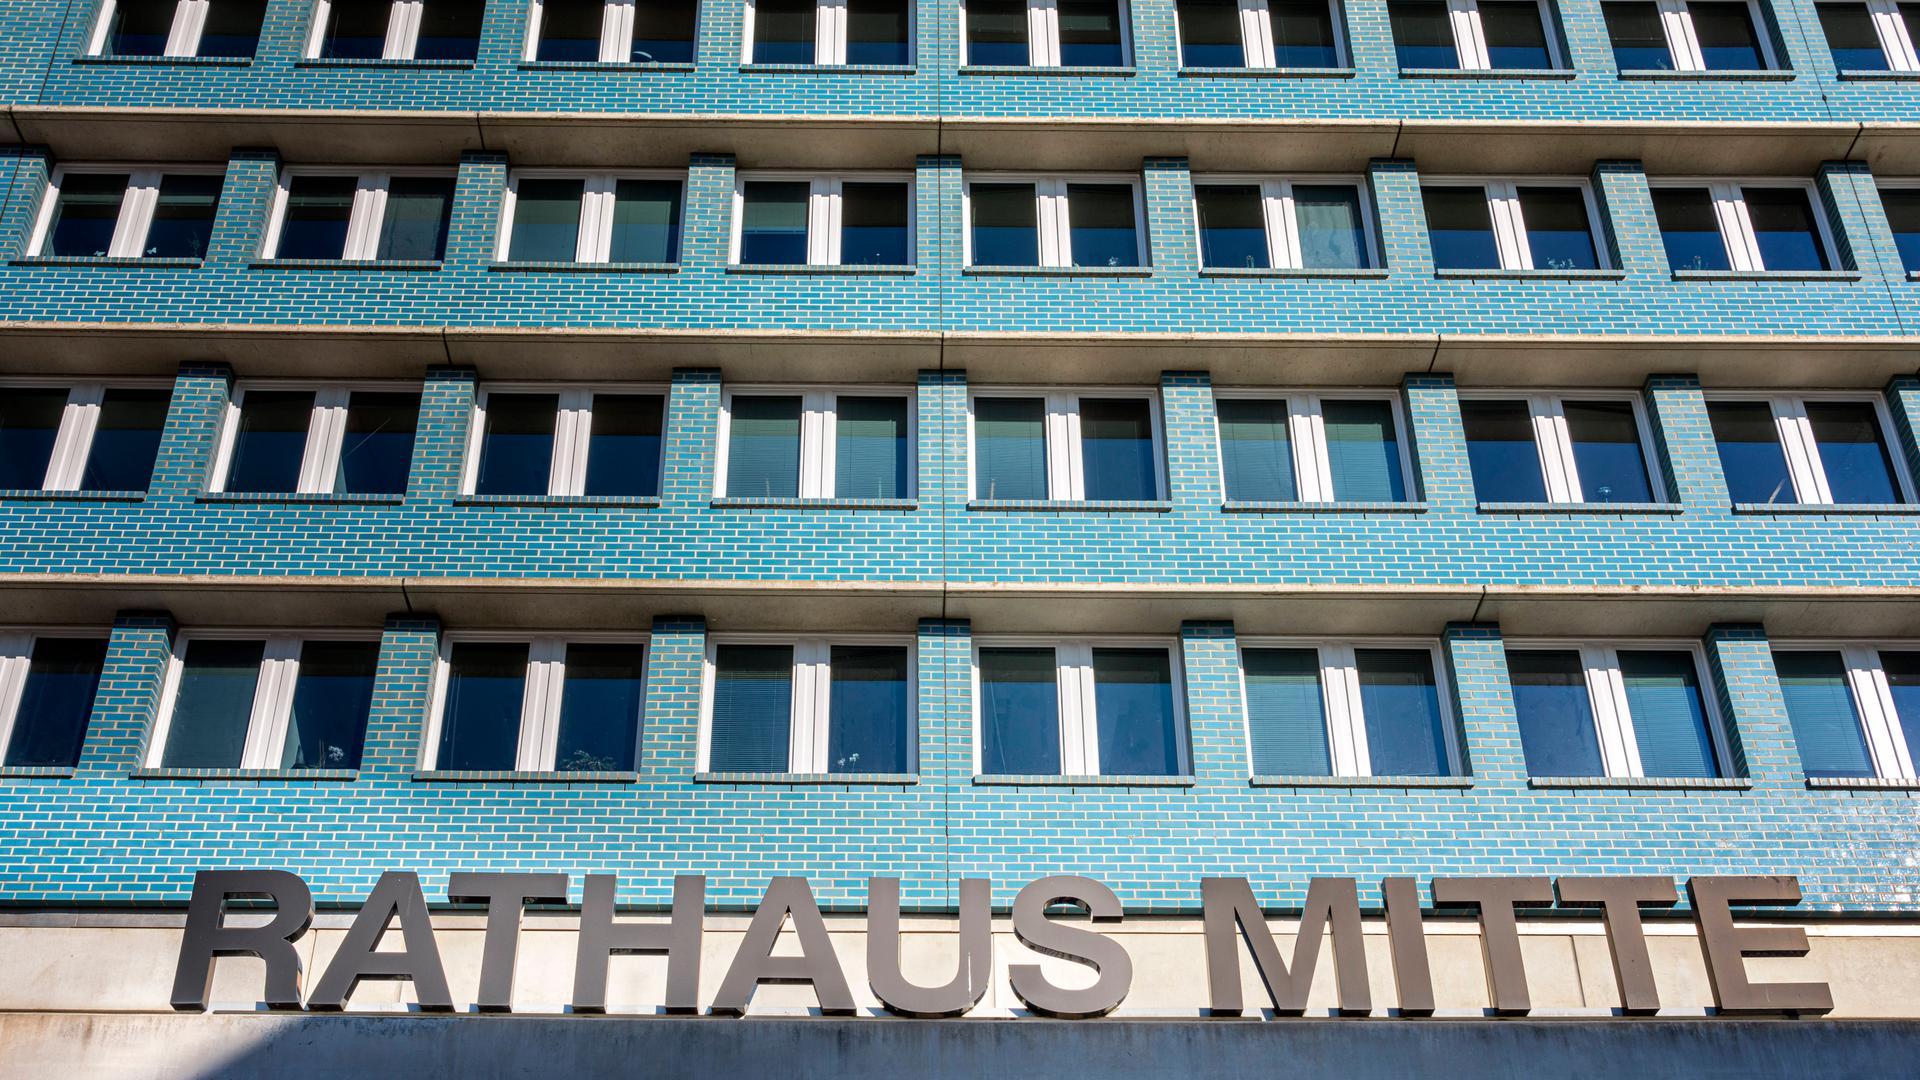 Ein mehrstöckiges Gebäude mit türkisfarbigen Wänden und vielen Fenstern, die gleichförmig angeordnet sind. Im Vordergrund   ist der Schriftzug "Rahtahus Mitte" zu sehen, der auf dem Vordach des Gebäudes steht. 